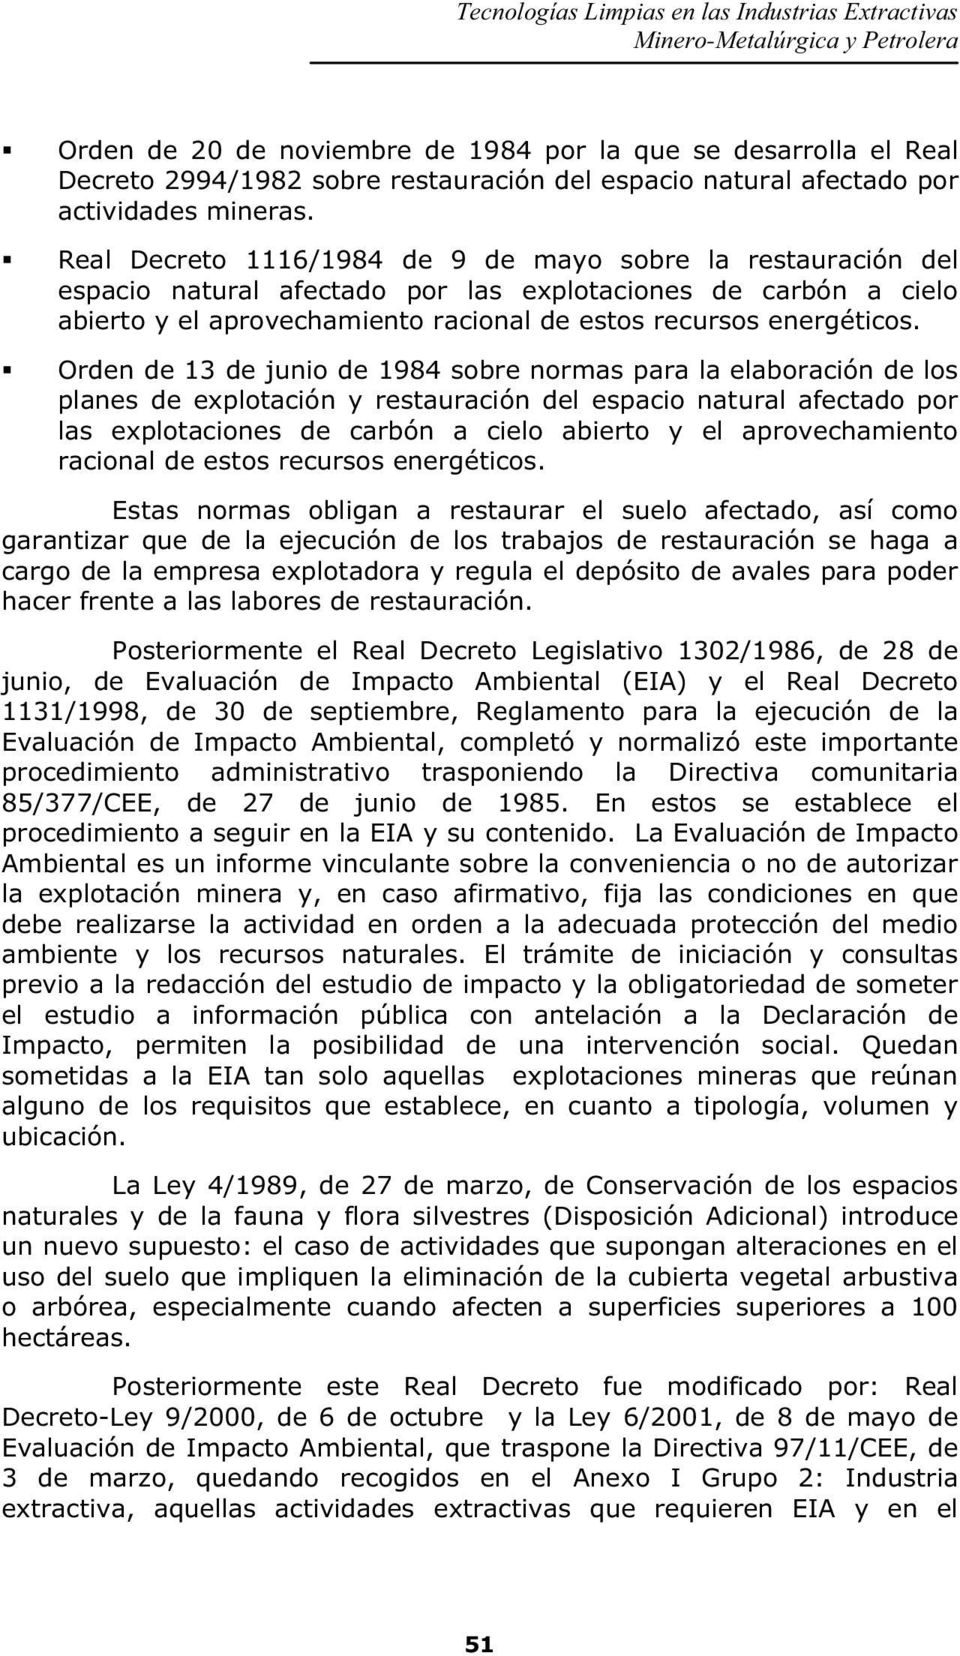 Orden de 13 de junio de 1984 sobre normas para la elaboración de los planes de explotación y restauración del espacio natural afectado por las explotaciones de carbón a cielo abierto y el